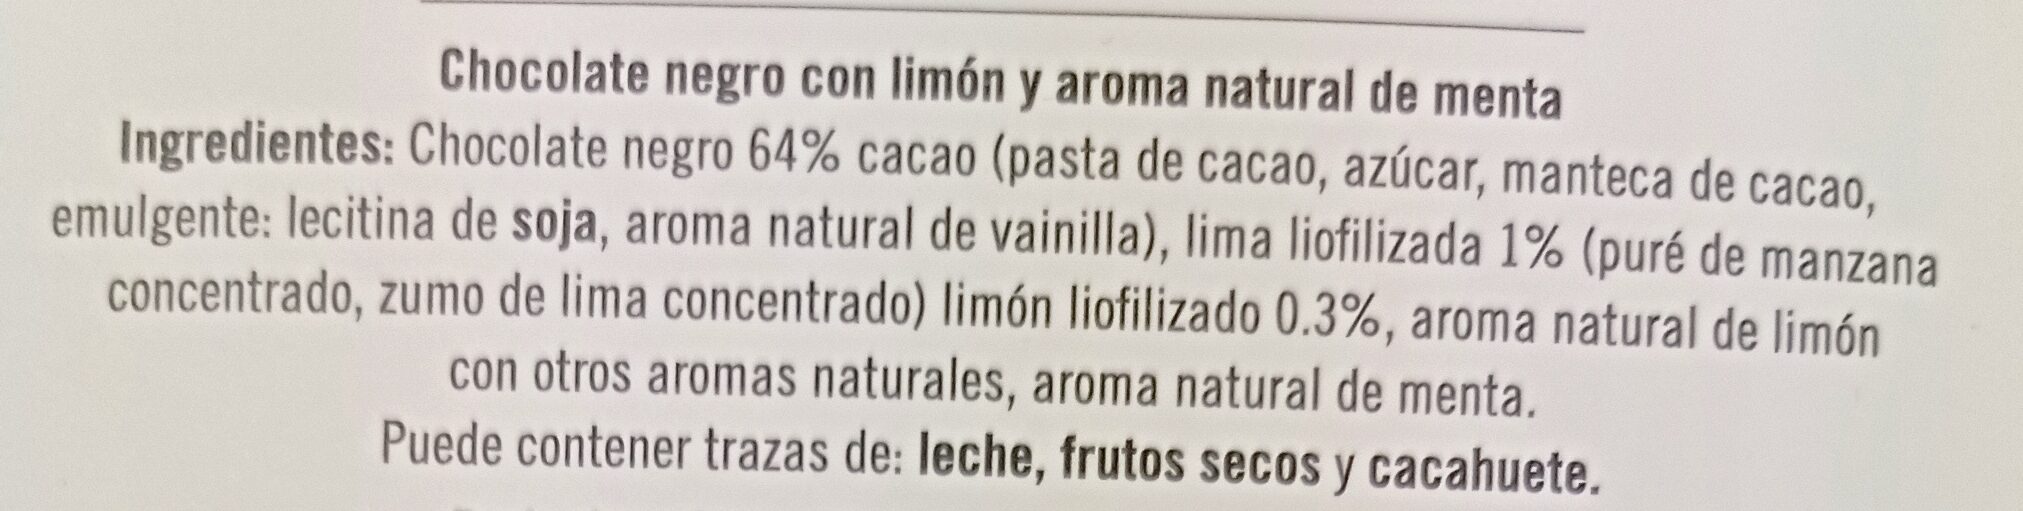 Lemon & Mint - Ingredients - es